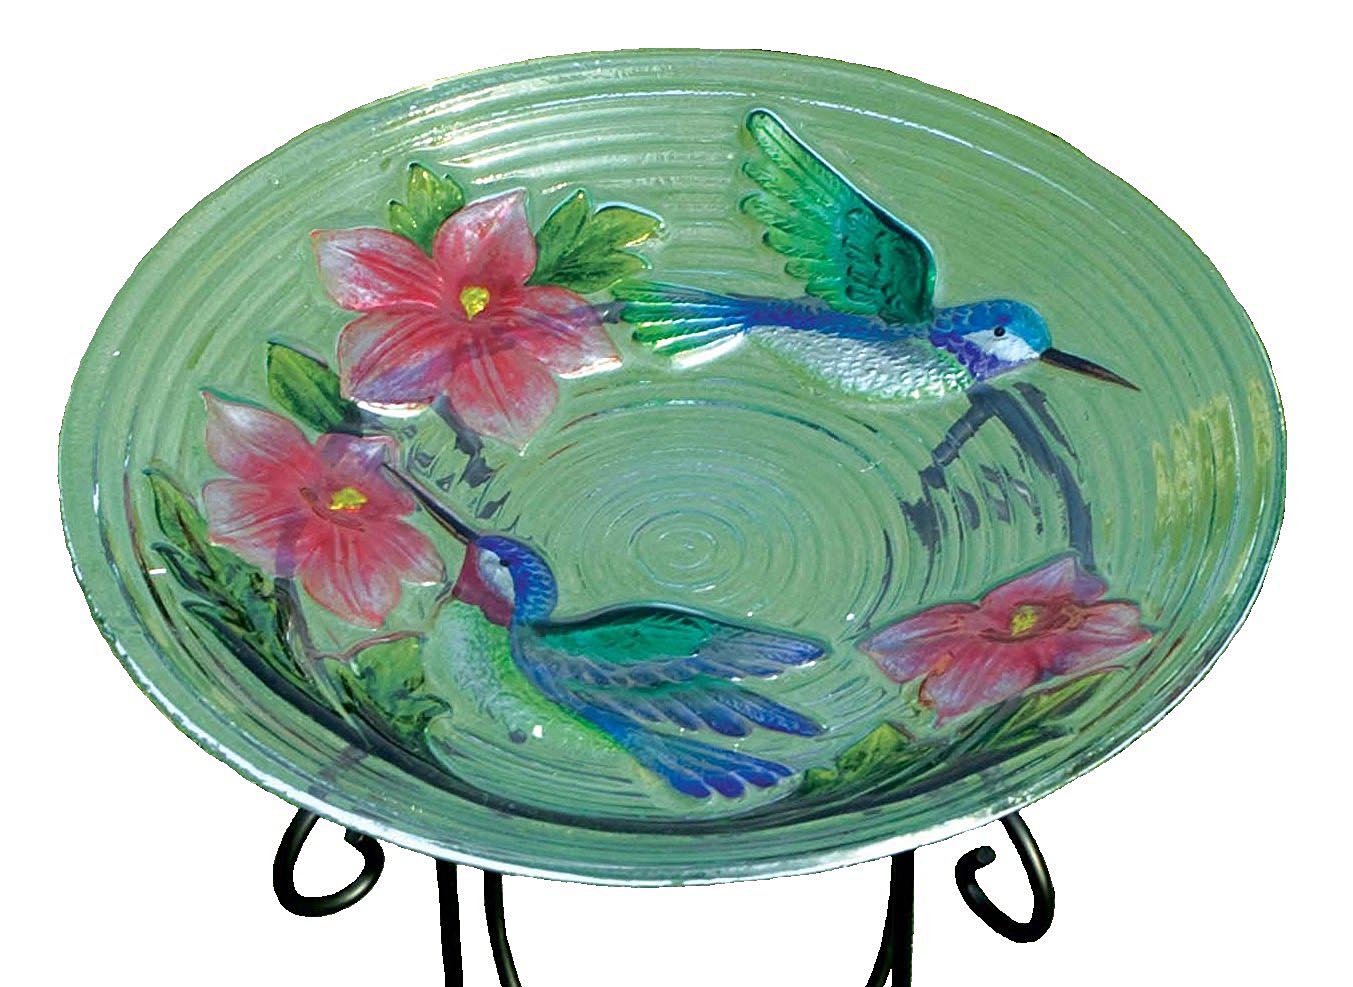 Evergreen Glass Bird Bath Bowls